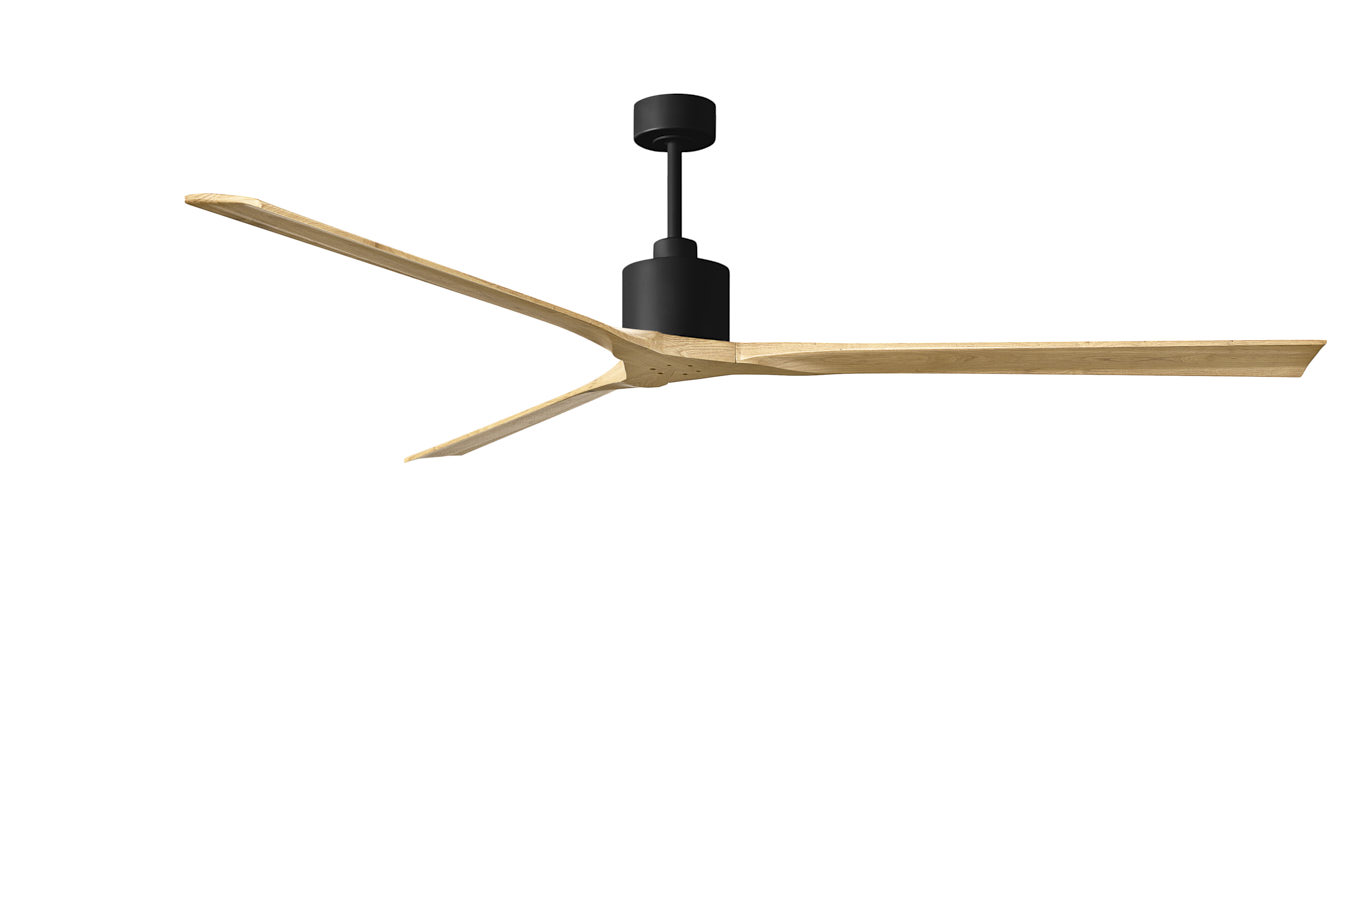 Nan XL ceiling fan in Matte Black with 90” Light Maple blades